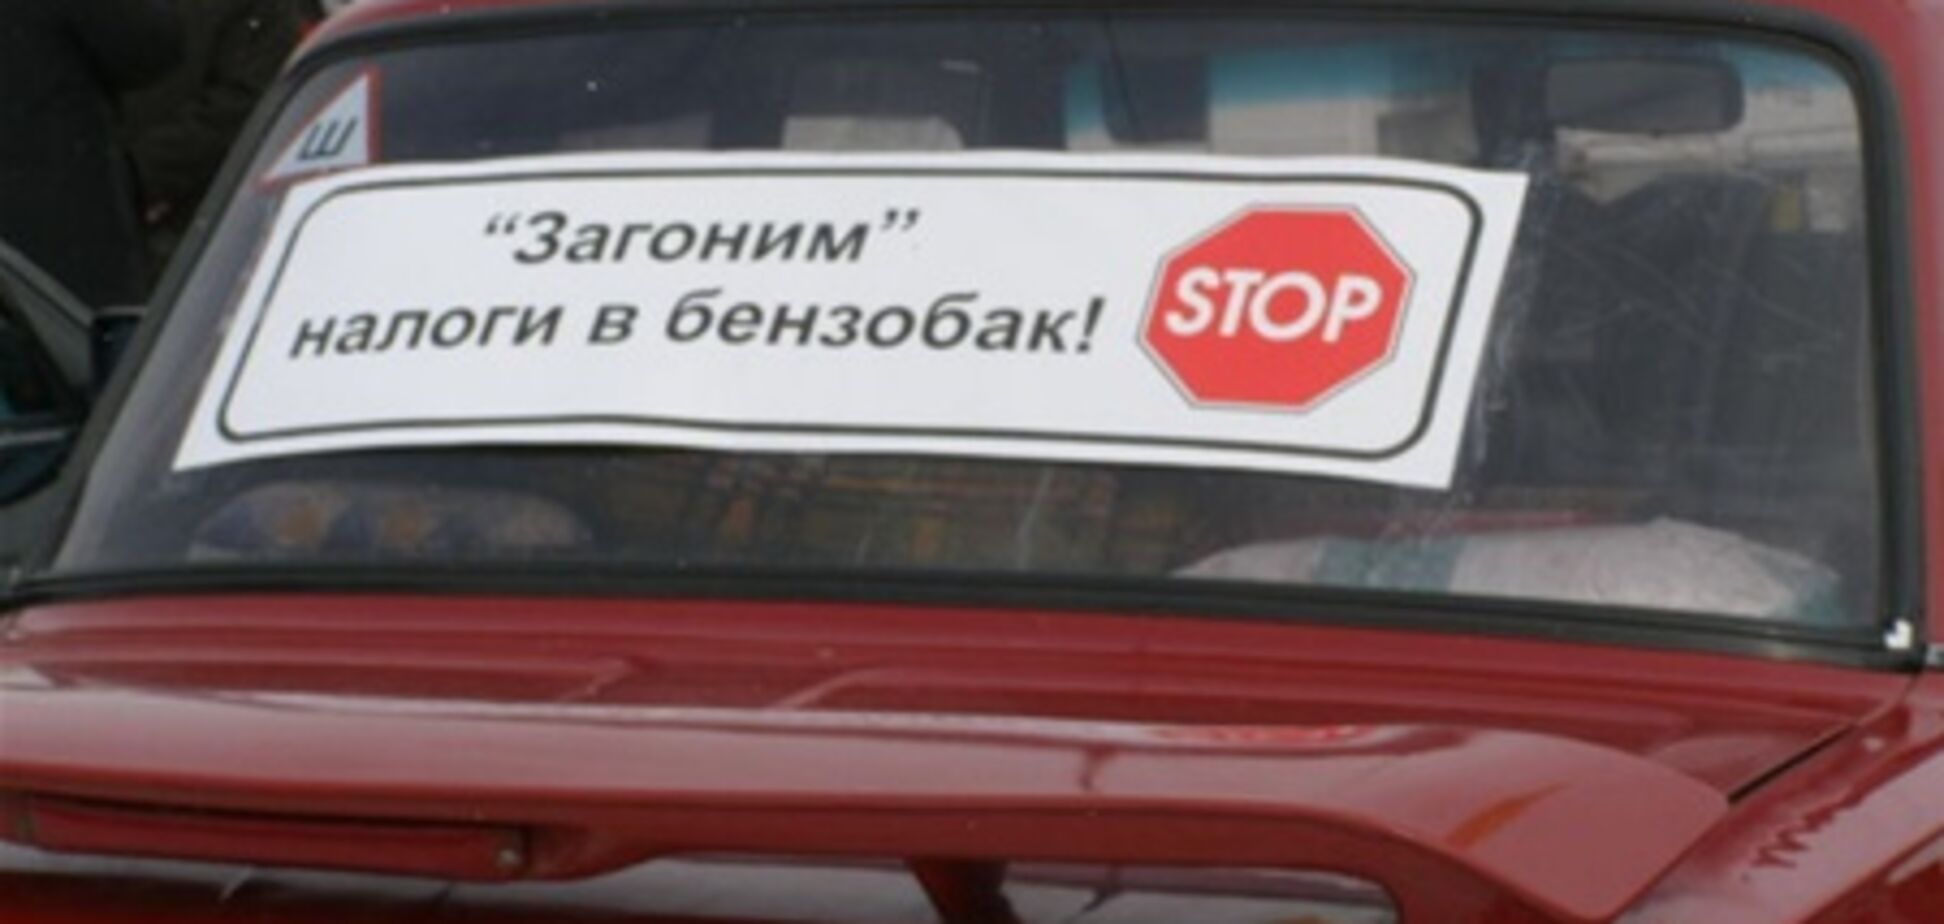 Беларусь: автомобилисты протестуют, Лукашенко стягивает БТР